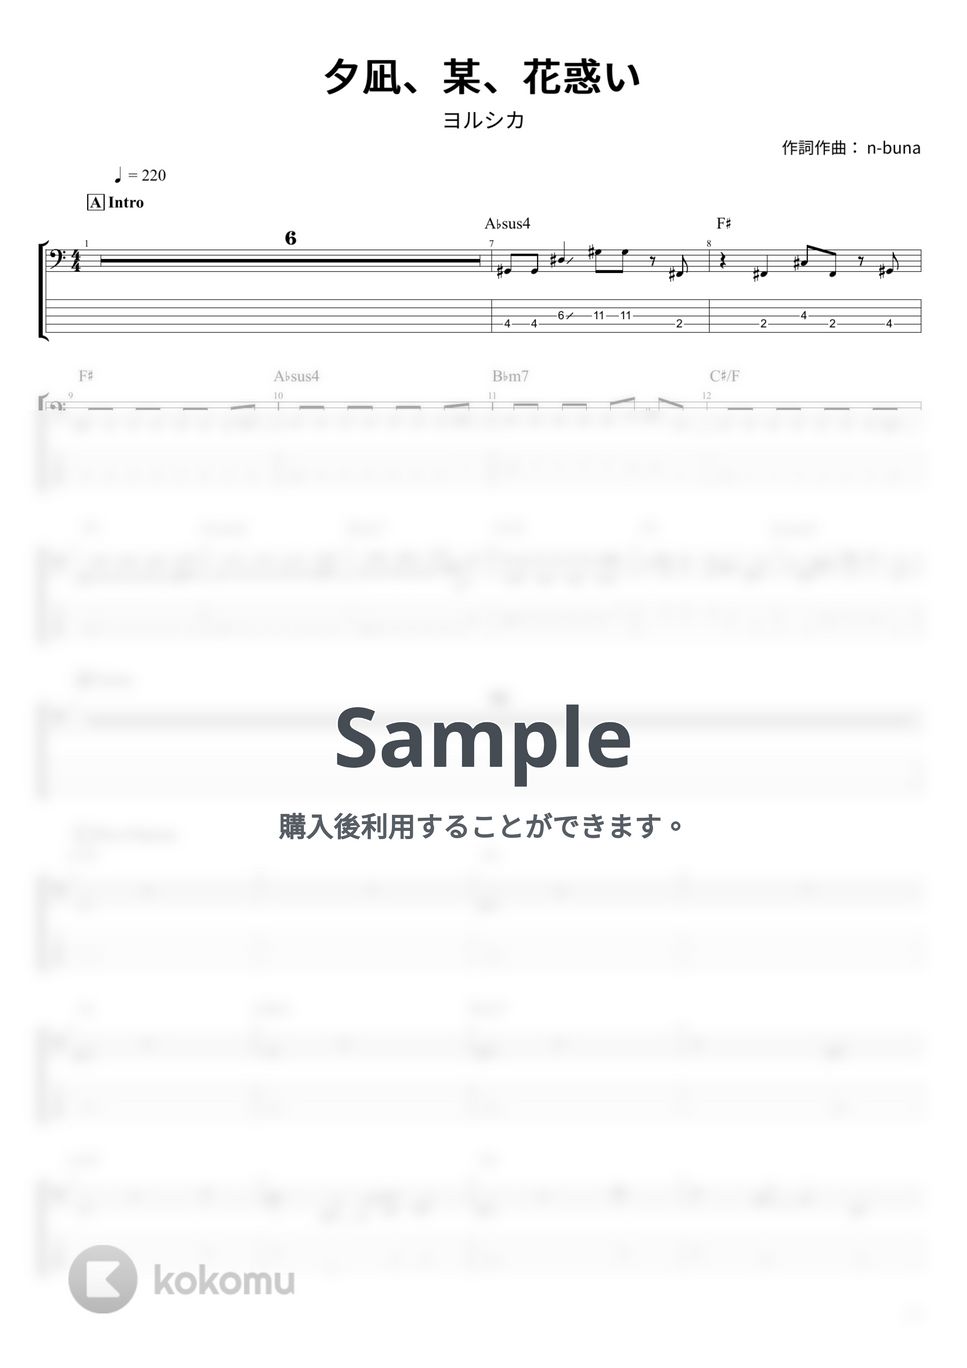 ヨルシカ - 夕凪、某、花惑い (ベース Tab譜 5弦) by T's bass score